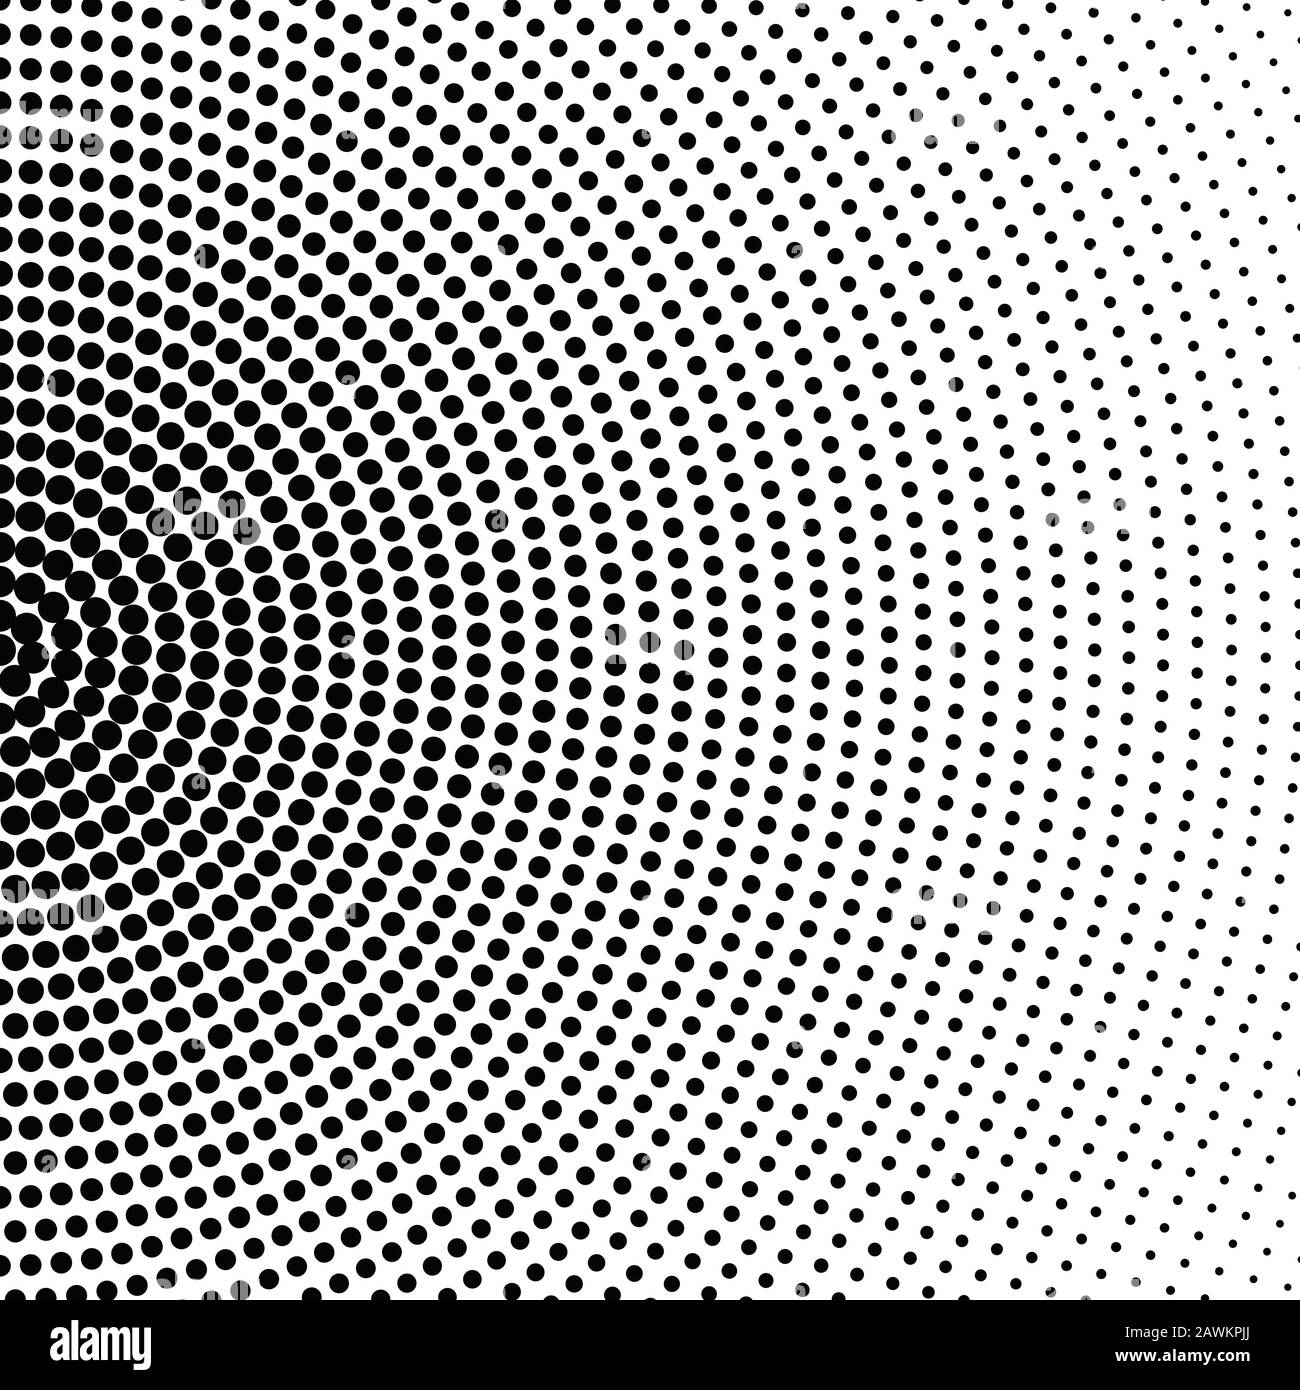 Hintergrund eines geometrischen monochromen Punktmusters - abstraktes Schwarzweiß-Vektordesign Stock Vektor